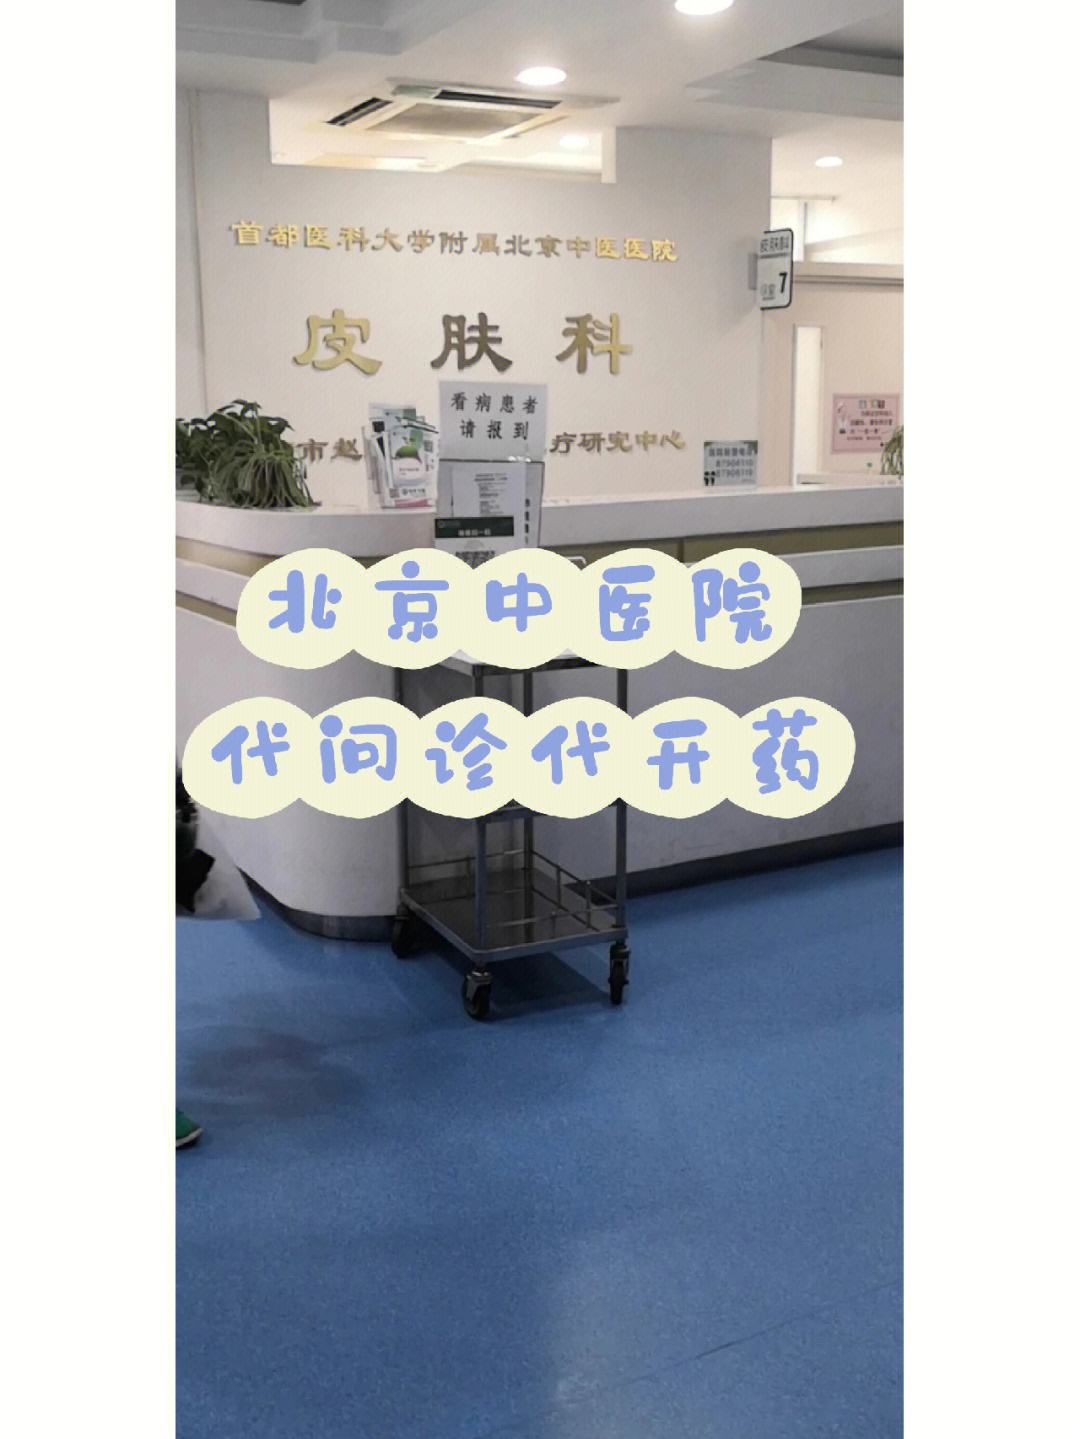 包含上海市第一人民医院医院跑腿陪诊挂号，诚信靠谱合理收费的词条